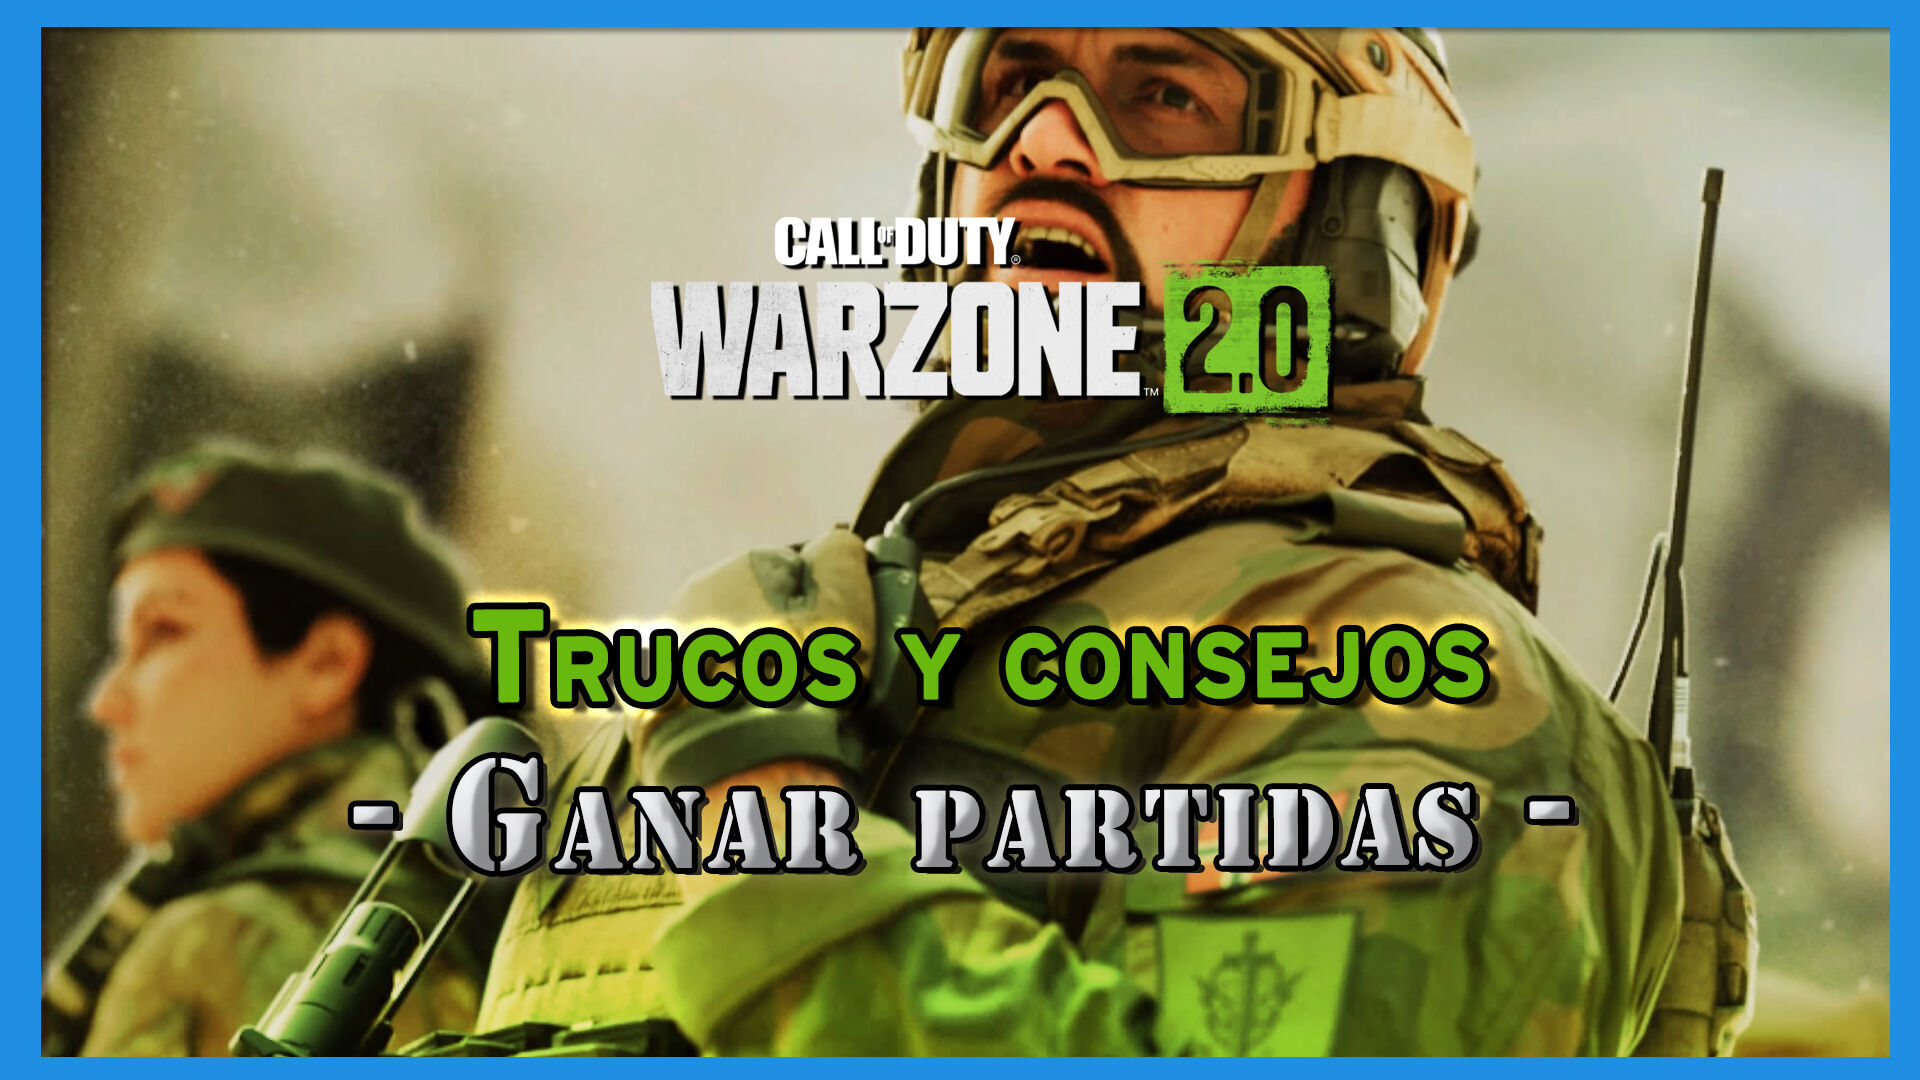 Warzone 2.0 Os próprios Jogadores vão acabar com o 🎮 Jogo 4x1 no solo  #warzone2 #cod 